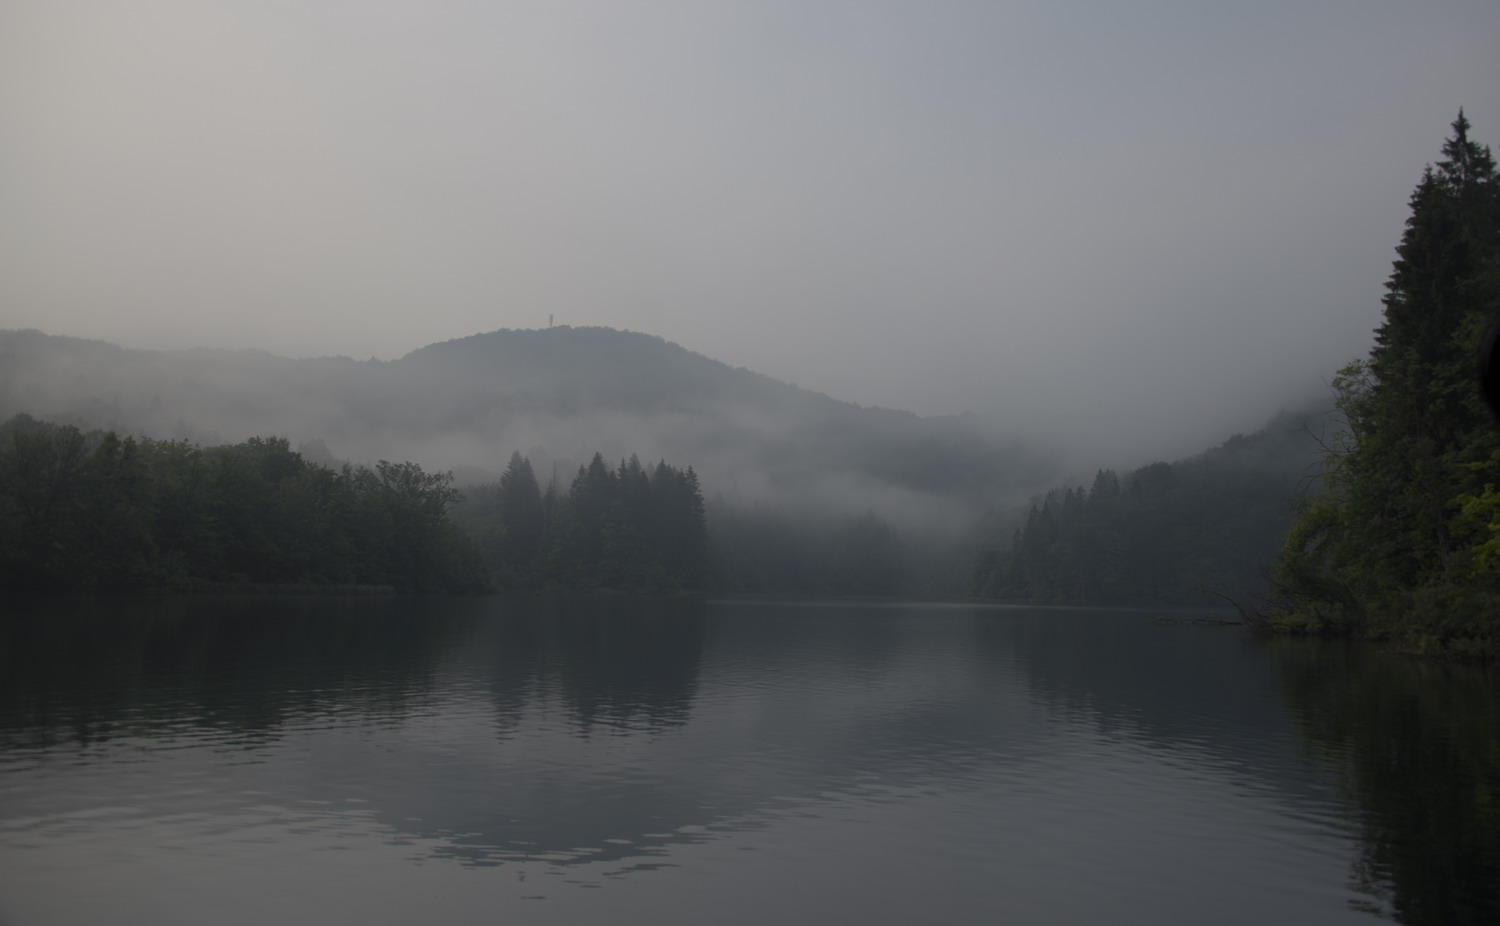 DSC_5977_1A1 - Morning Fog (Plitvice National Park)